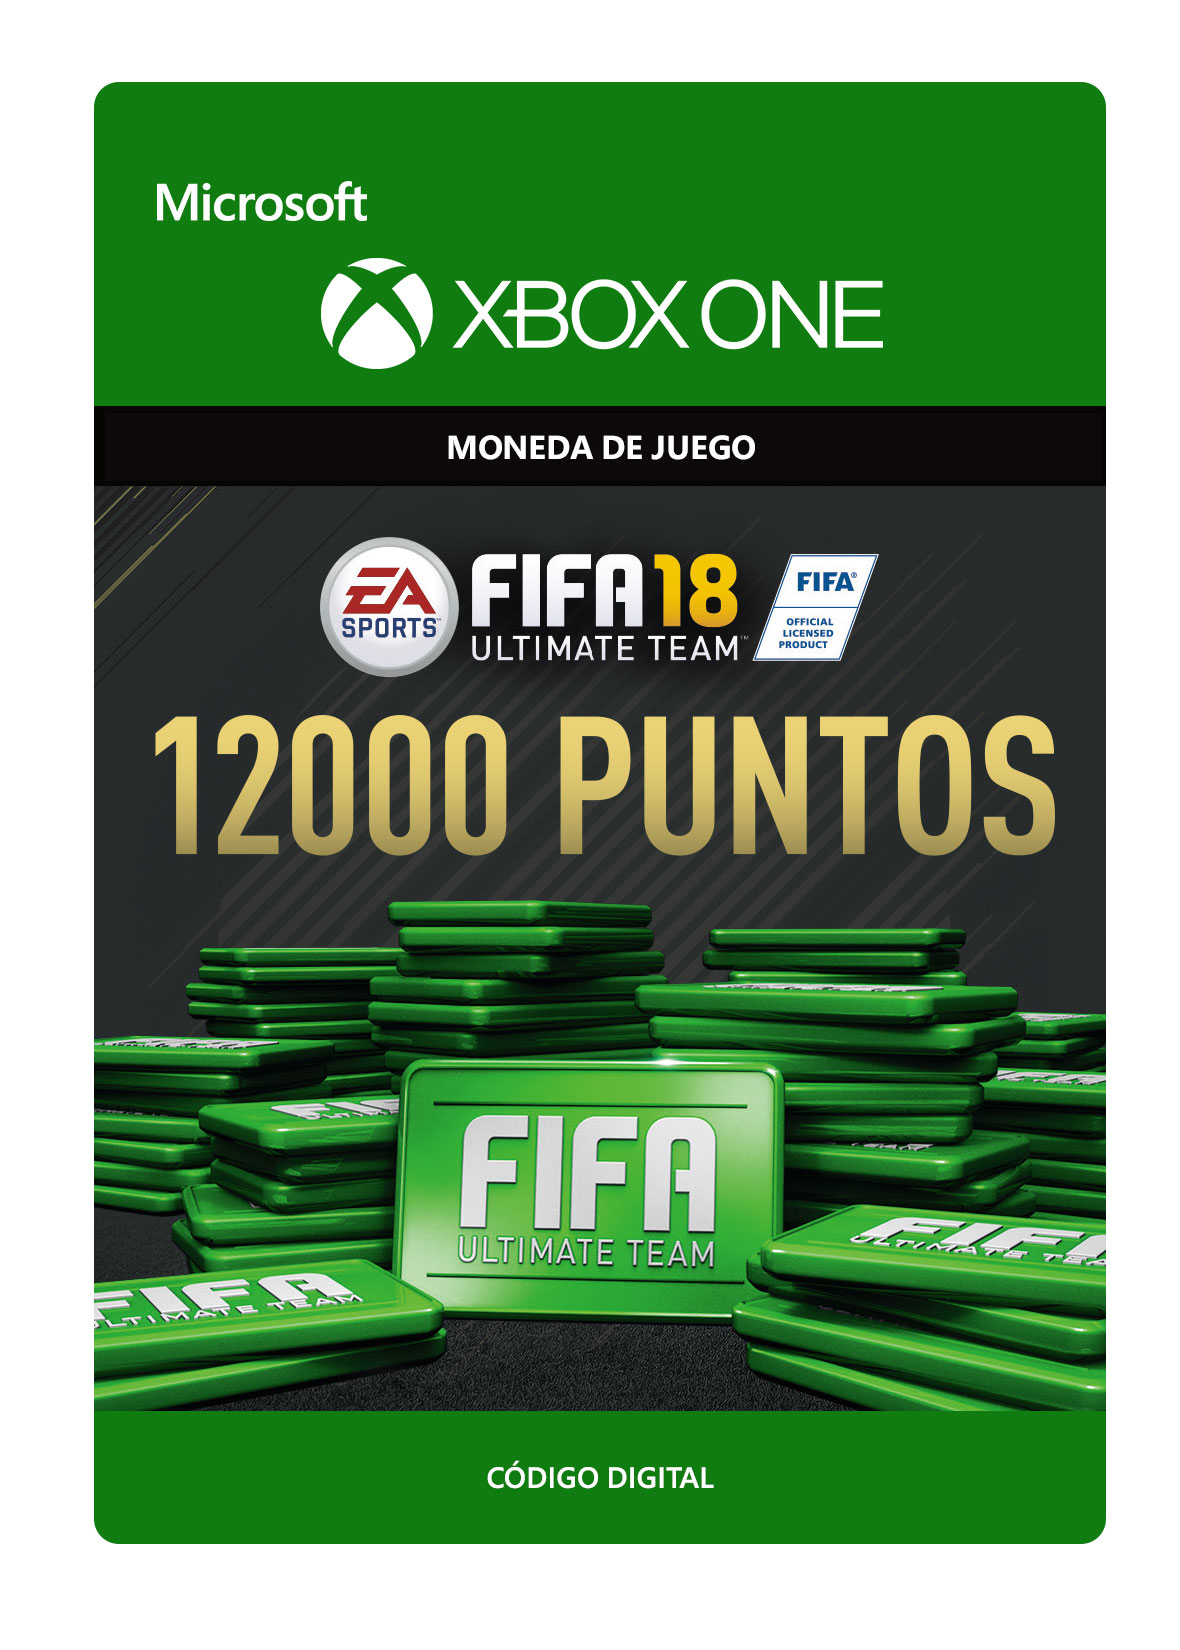 Xbox One - Fifa 18: Ultimate Team Fifa Points 12000 - Creditos/Monedas para Juegos